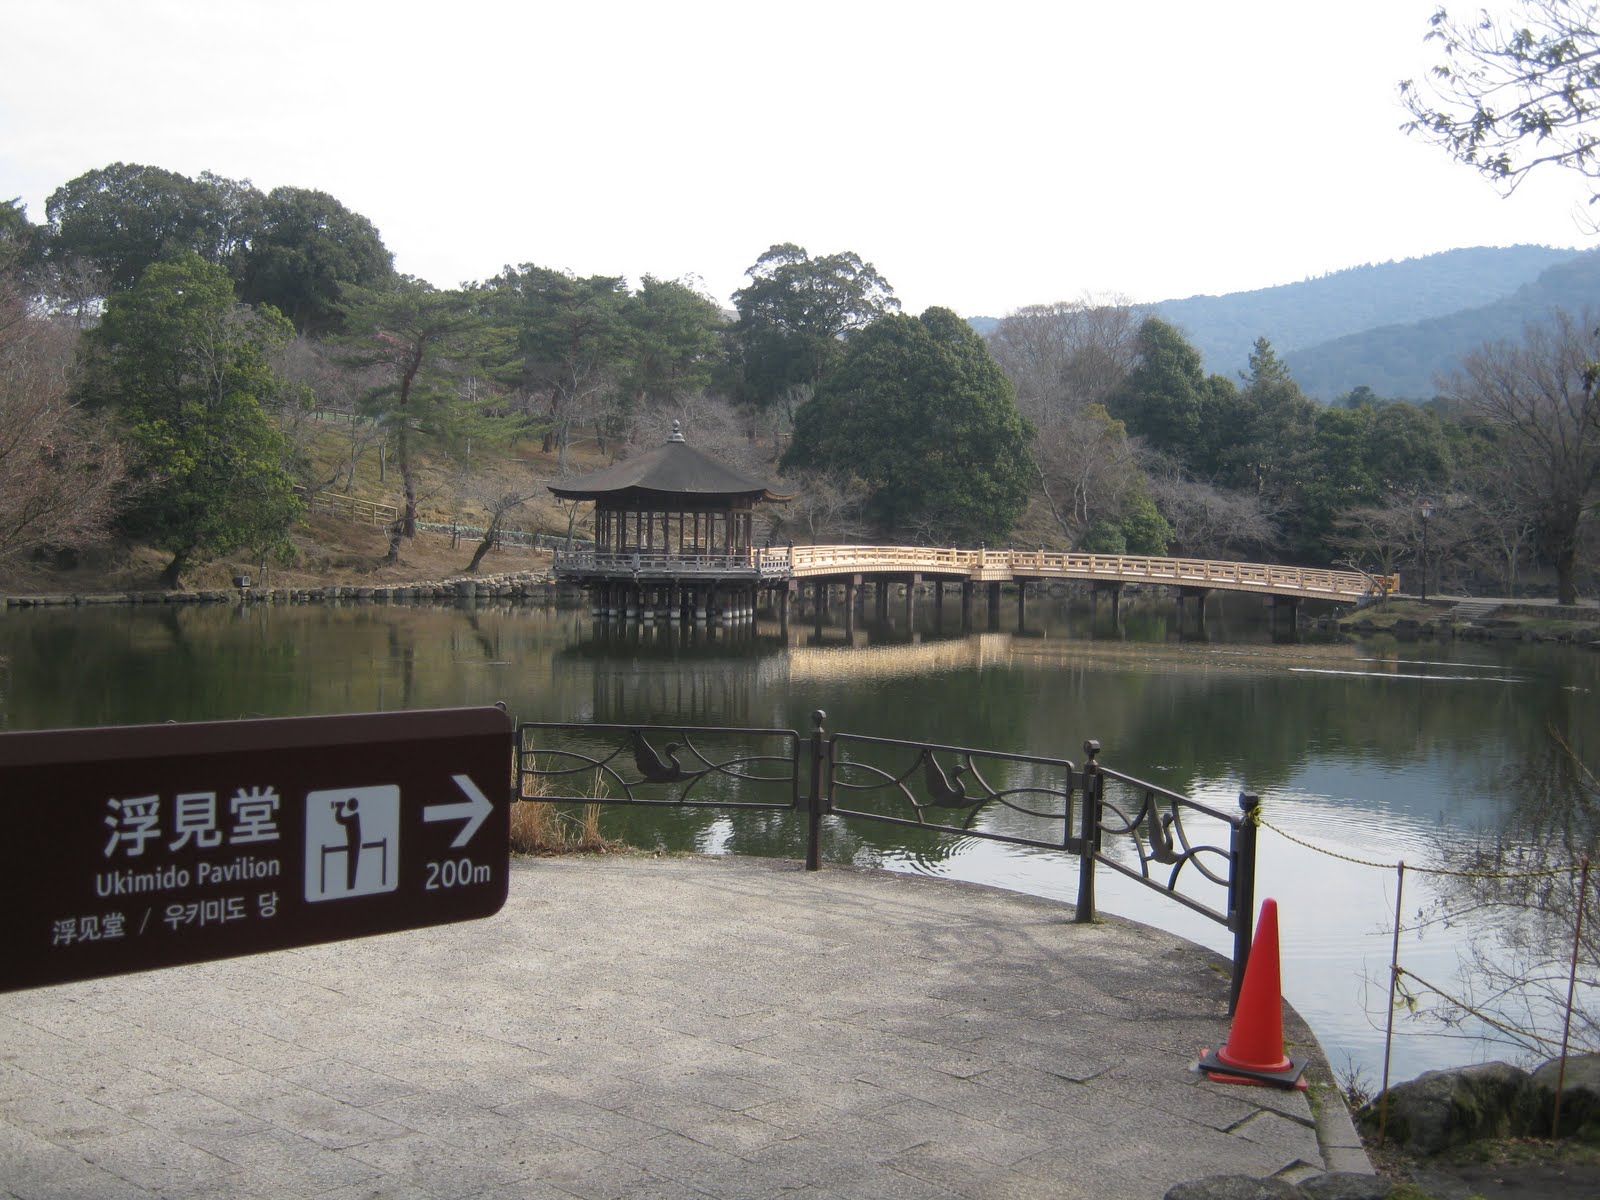 גן בוטני מאניו במקדש קאסוגאטאיישה - נארה - Kasugataisha Shrine MANYOU Botanical Garden